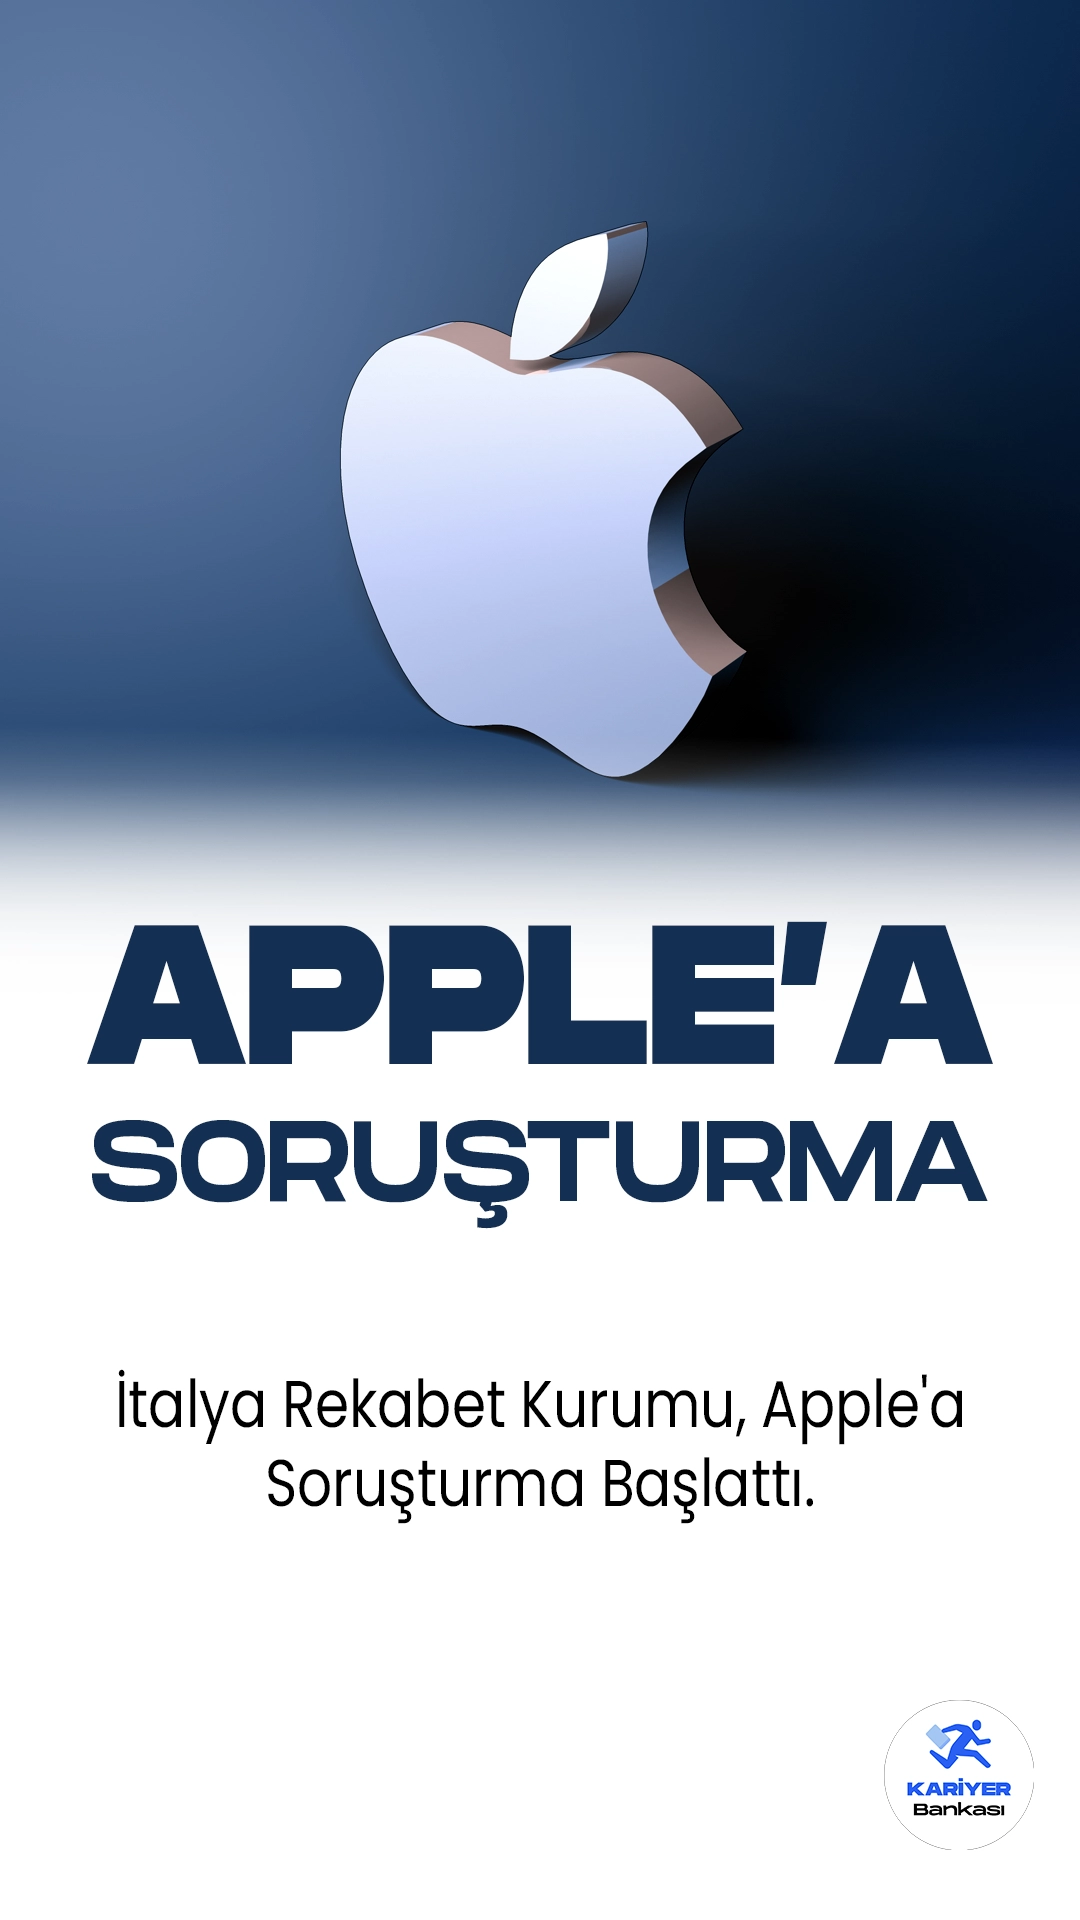 İtalya Rekabet Kurumu, Apple'a Soruşturma Başlattı.İtalya Rekabet Kurumu (AGCM), Apple'ın pazar hakimiyetini kötüye kullanıp kullanmadığına yönelik bir soruşturma başlattı. AGCM tarafından yapılan açıklamaya göre, ABD merkezli teknoloji devi, uygulama (app) pazarındaki hakim durumunu kötüye kullanıp kullanmadığına ilişkin incelenecek.